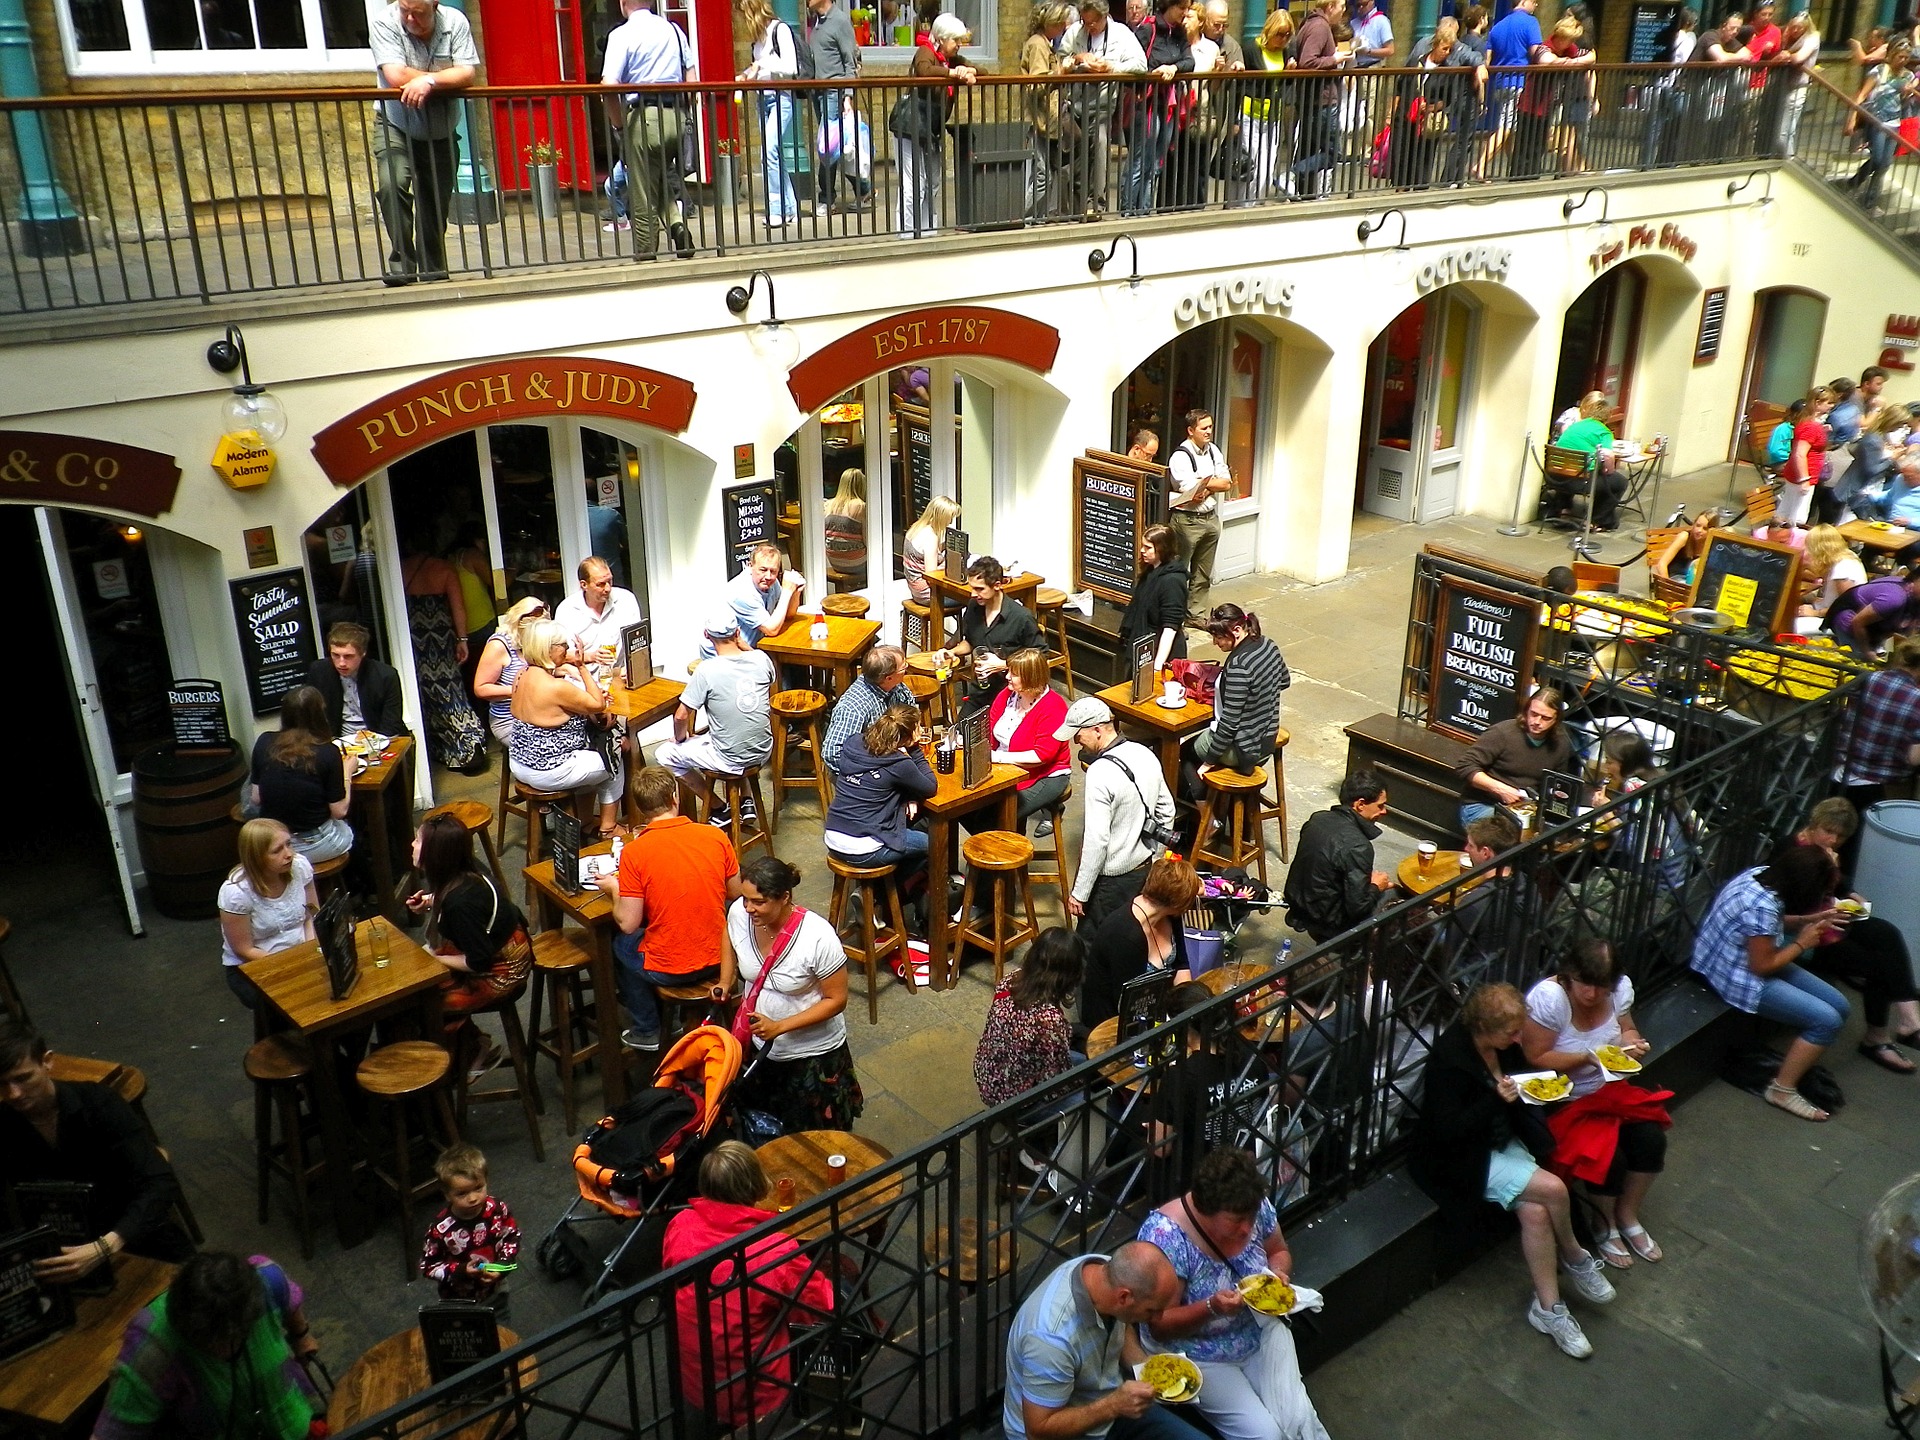 Κοροναϊός: Κανόνες πρόληψης όταν επισκεπτόμαστε καφέ και εστιατόρια